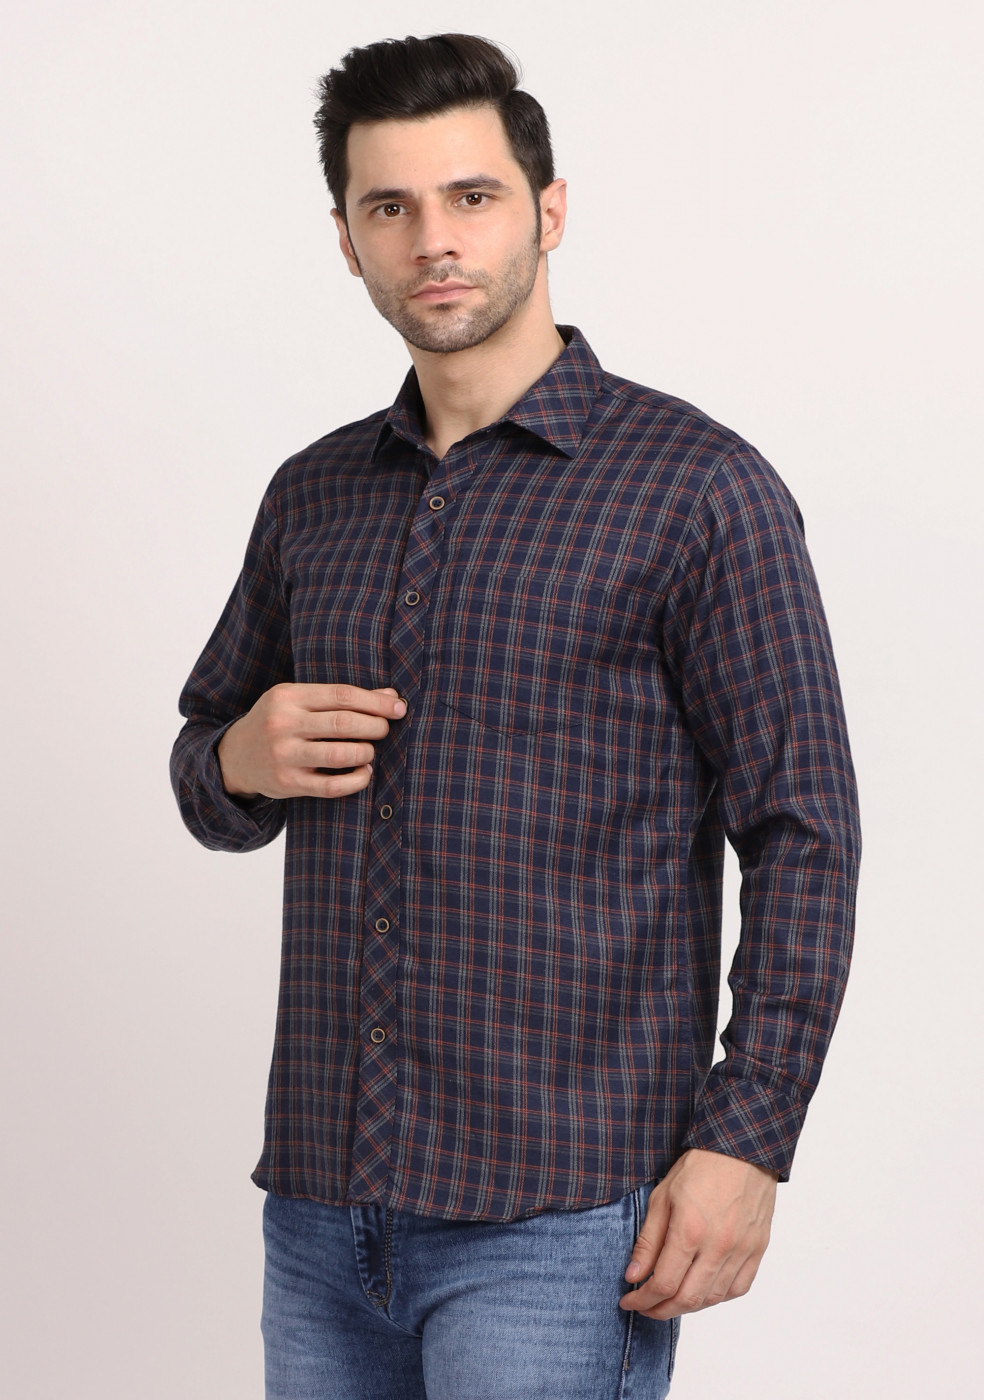 ASHTOM Navy Gray Line Check Shirt Regular Fit For Men